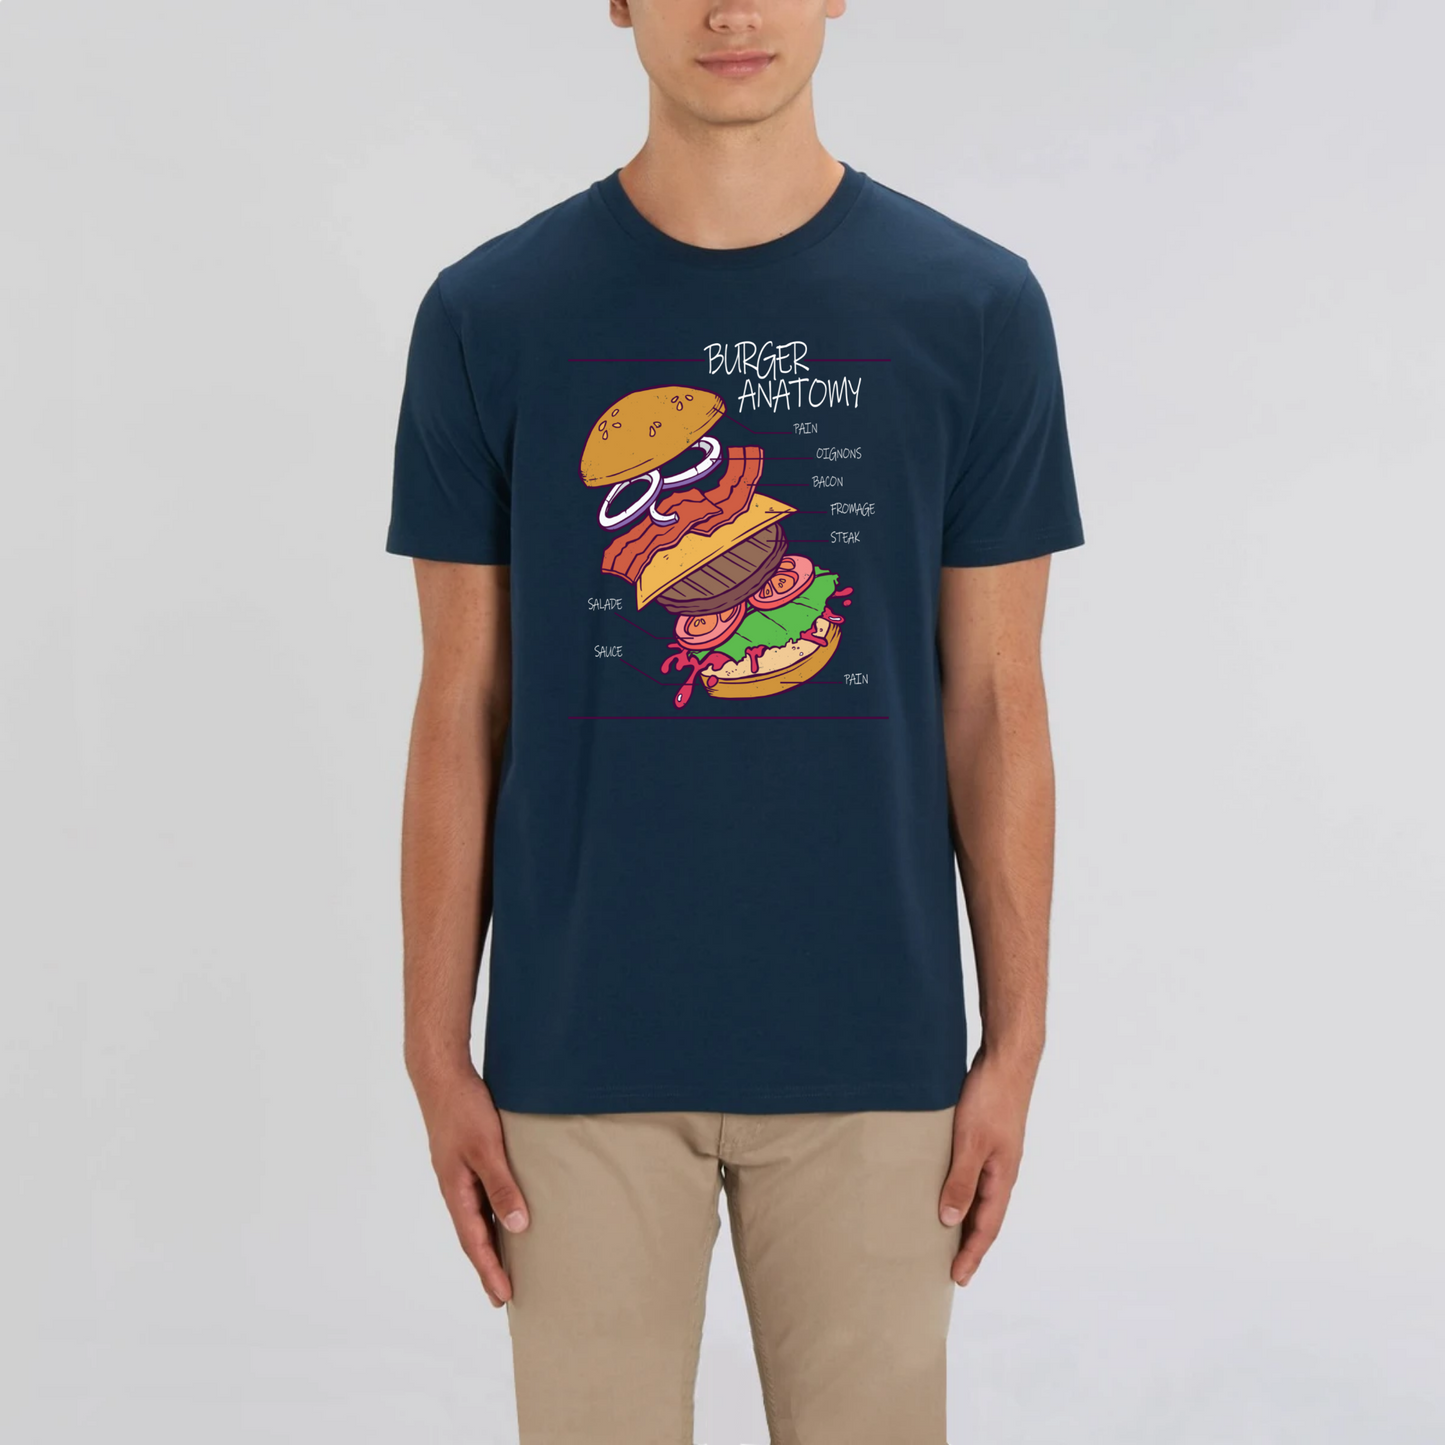 t-shirt burger anatomy en coton bio pour homme de T-French, t-shirt homme burger, t-shirt burger, tee shirt en coton bio homme, t-shirt homme humour, t-shirt humour nourriture, Marine